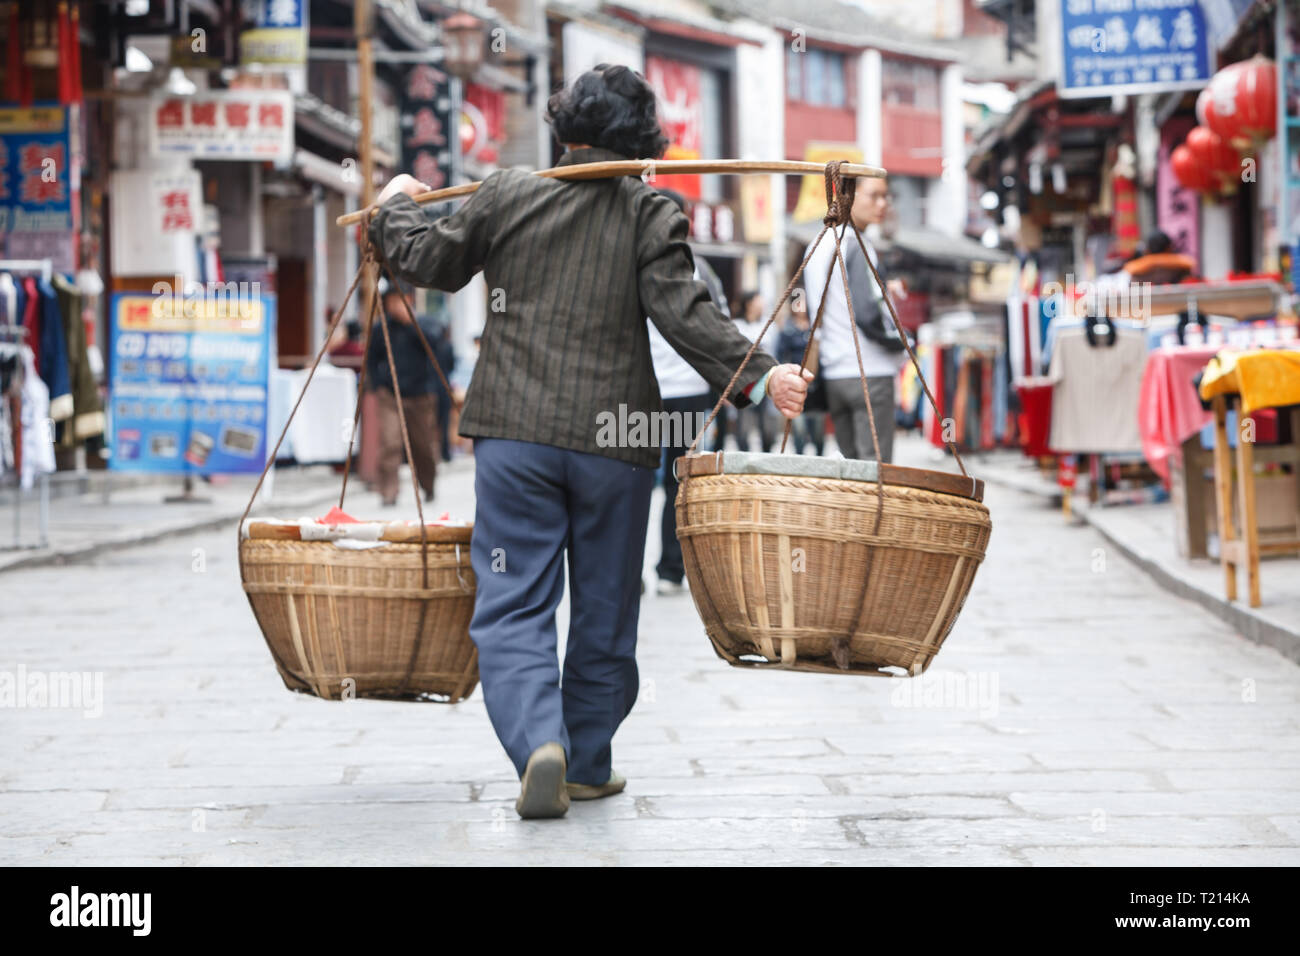 Uomo con polo sulla spalla con due cestelli appesi porta oggetti Market street in un tradizionale vecchio modo Foto Stock